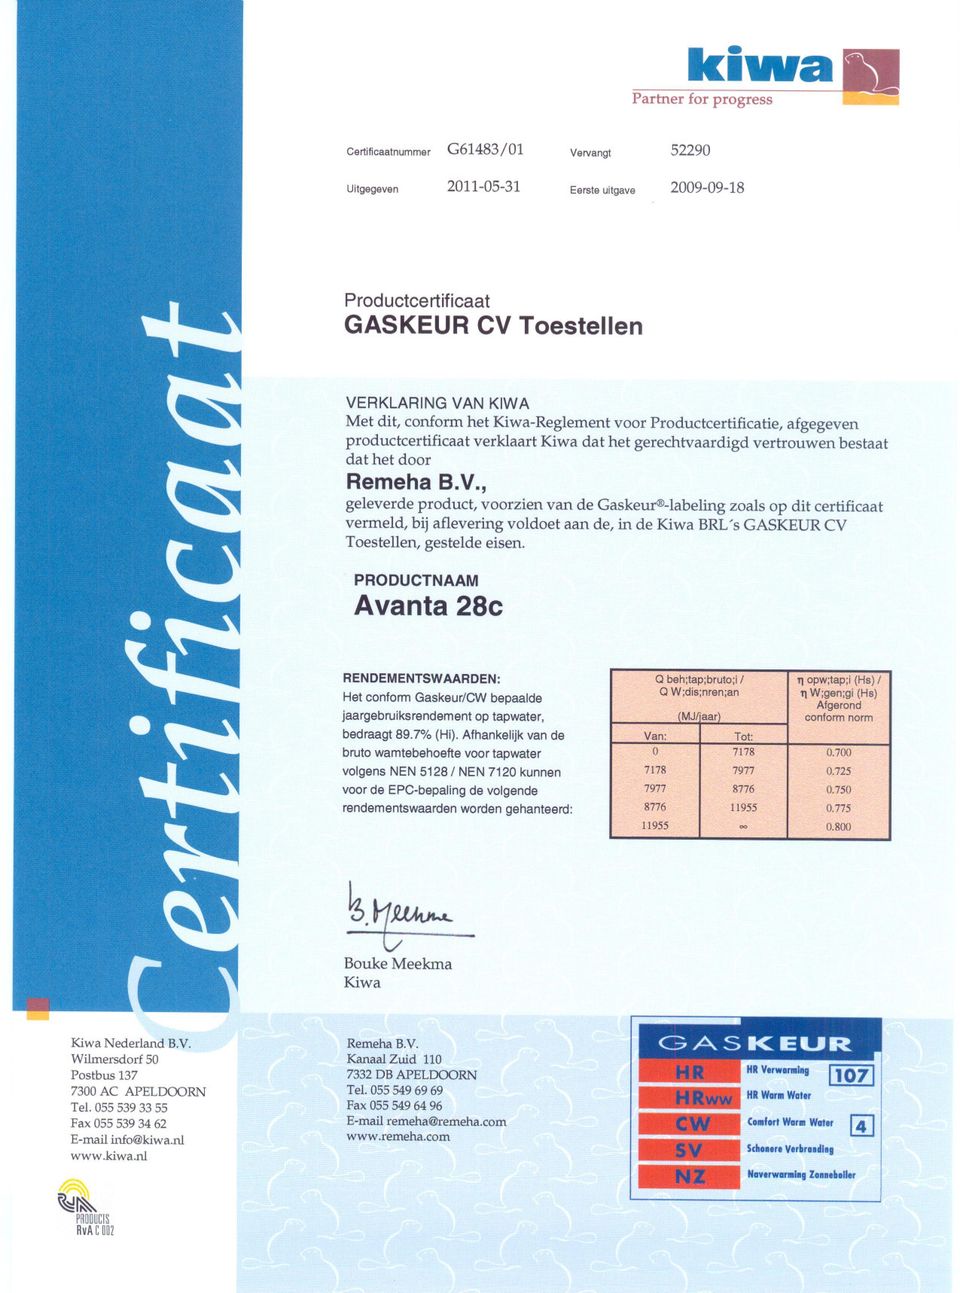 , geleverde product, voorzien van de Gaskeur -labeling zoals op dit certificaat vermeld, bij aflevering voldoet aan de, in de Kiwa BRL's GASKEUR CV Toestellen, gestelde eisen.